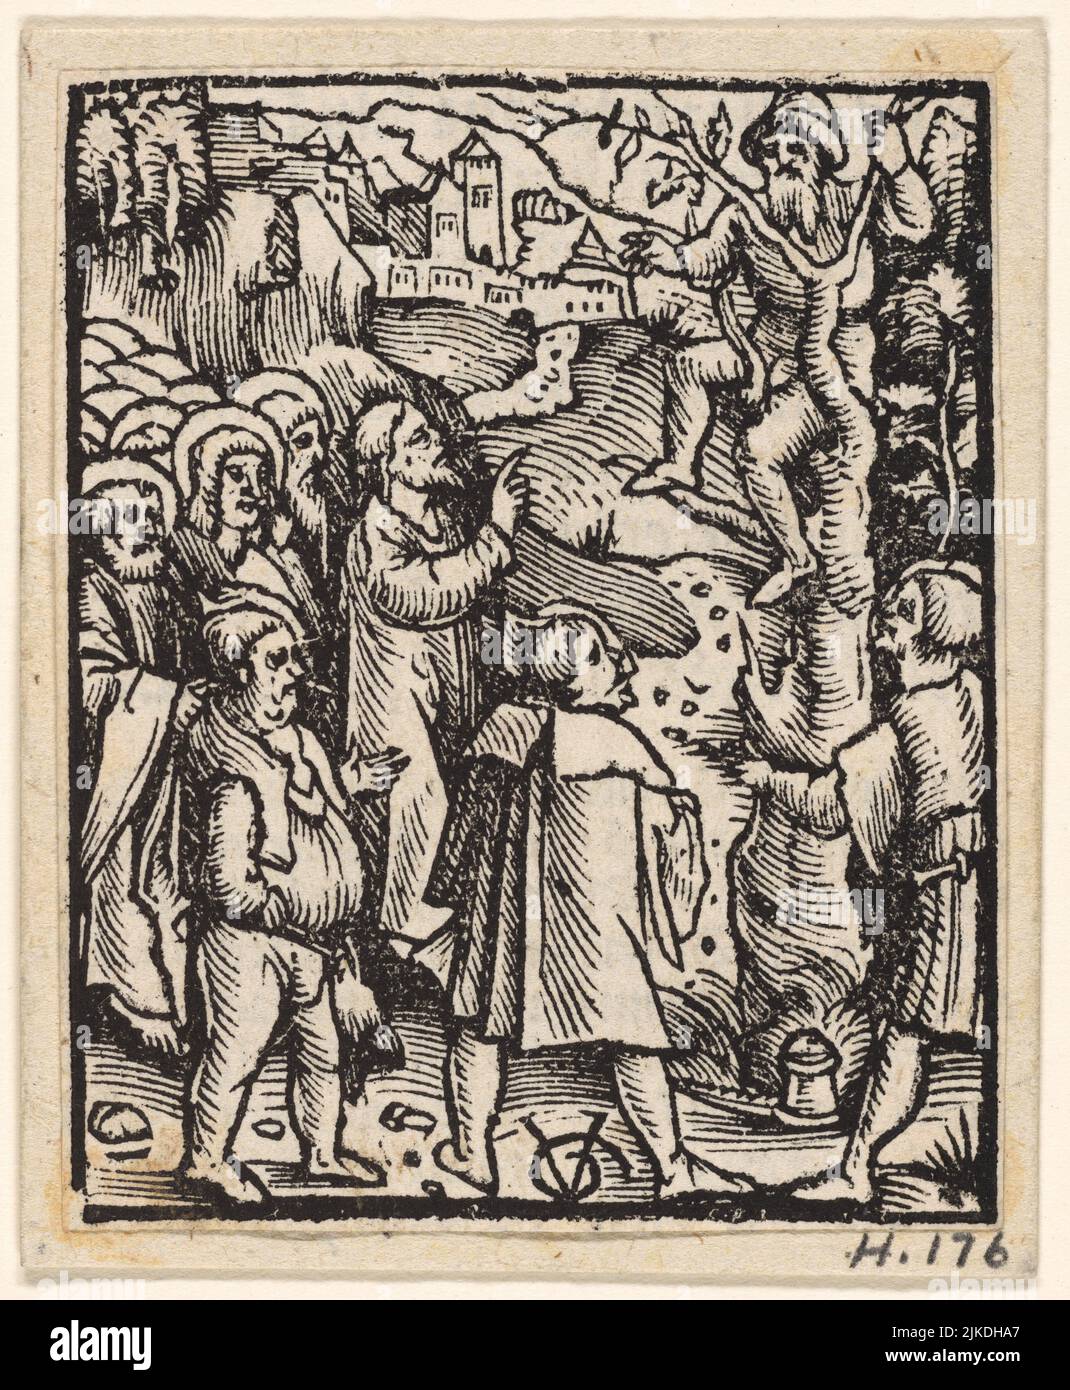 Zaccheus im Feigenbaum. Graf, Urs, ca. 1485-ca. 1527 (Grafiker). Deutscher Meister druckt Postilla Guillermi Averni Super Stockfoto